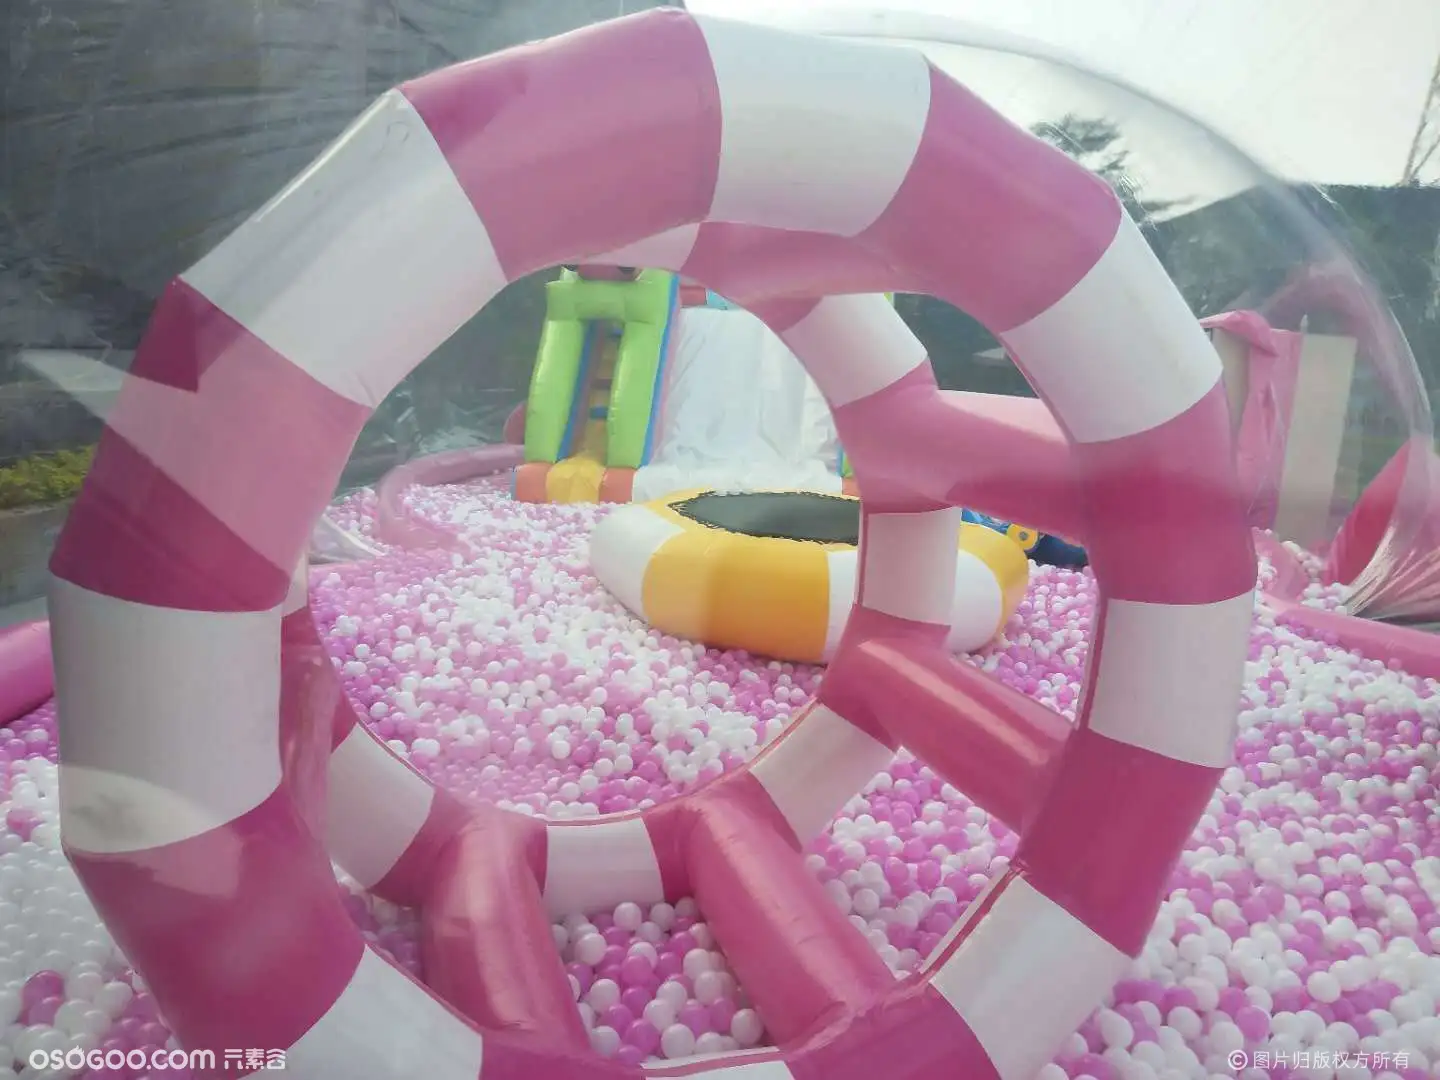 粉红猪猪岛 大型充气城堡游乐设备 网红气模充气城堡